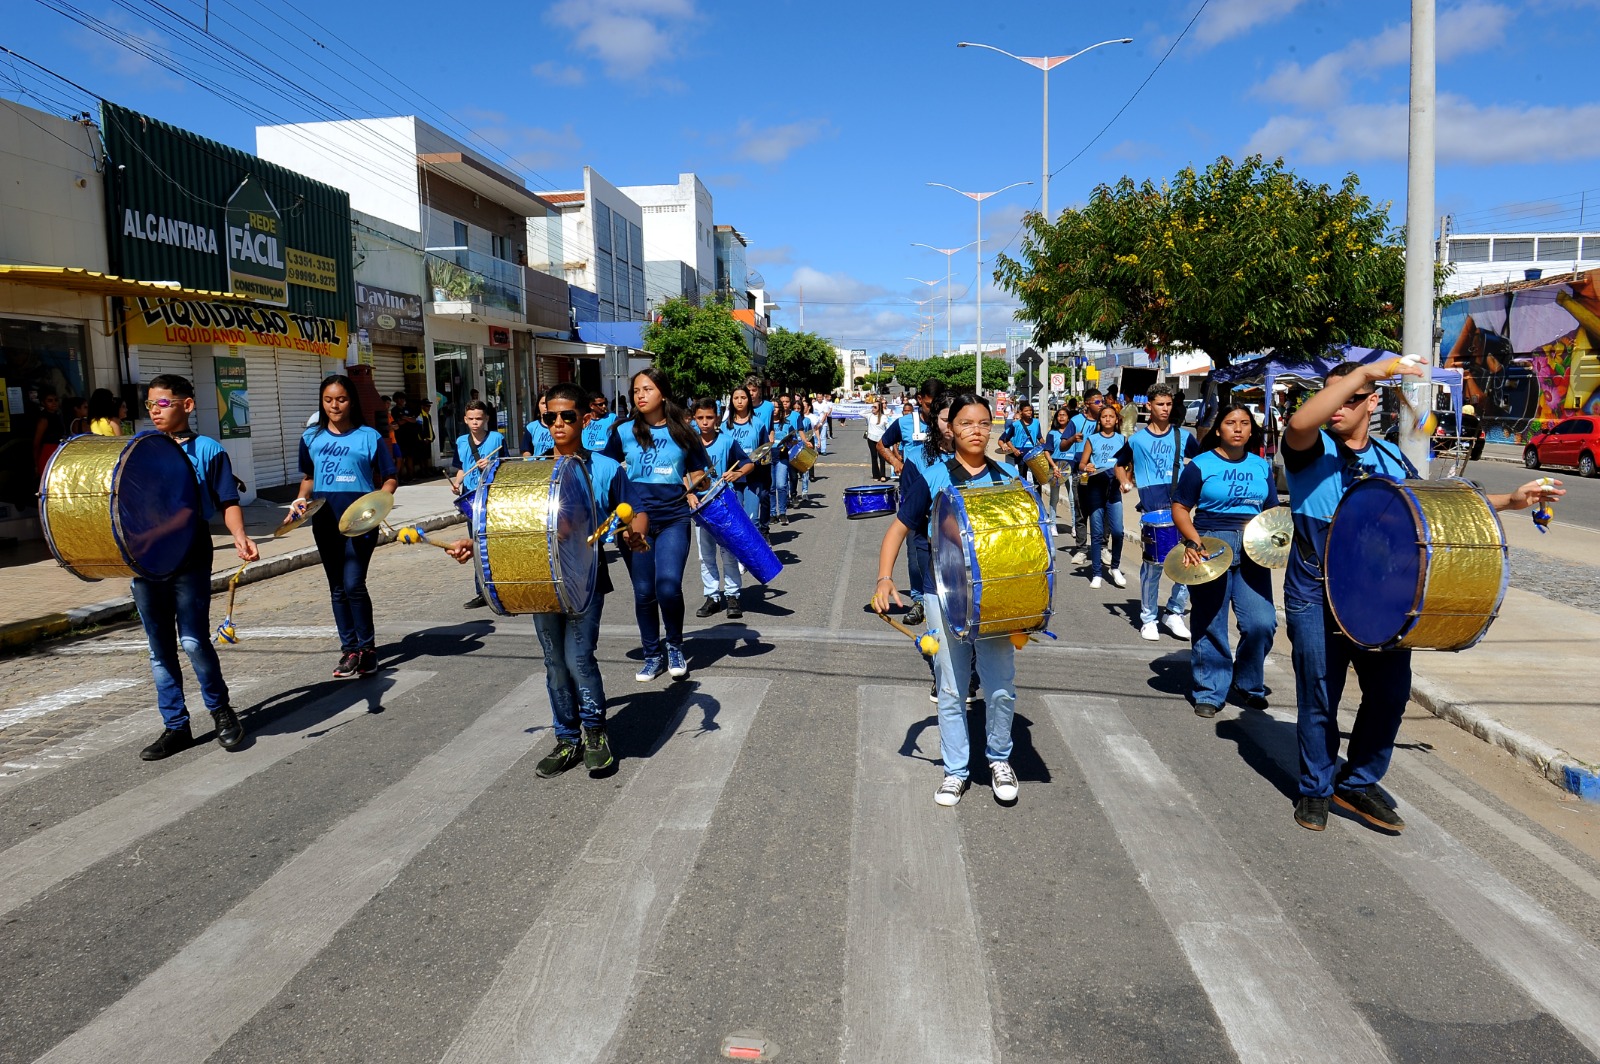 Desfiles-Civicos-em-Monteiro-acontecem-com-grande-presenca-de-publico-e-autoridades-26 Desfiles Cívicos em Monteiro acontecem com grande presença de público e autoridades